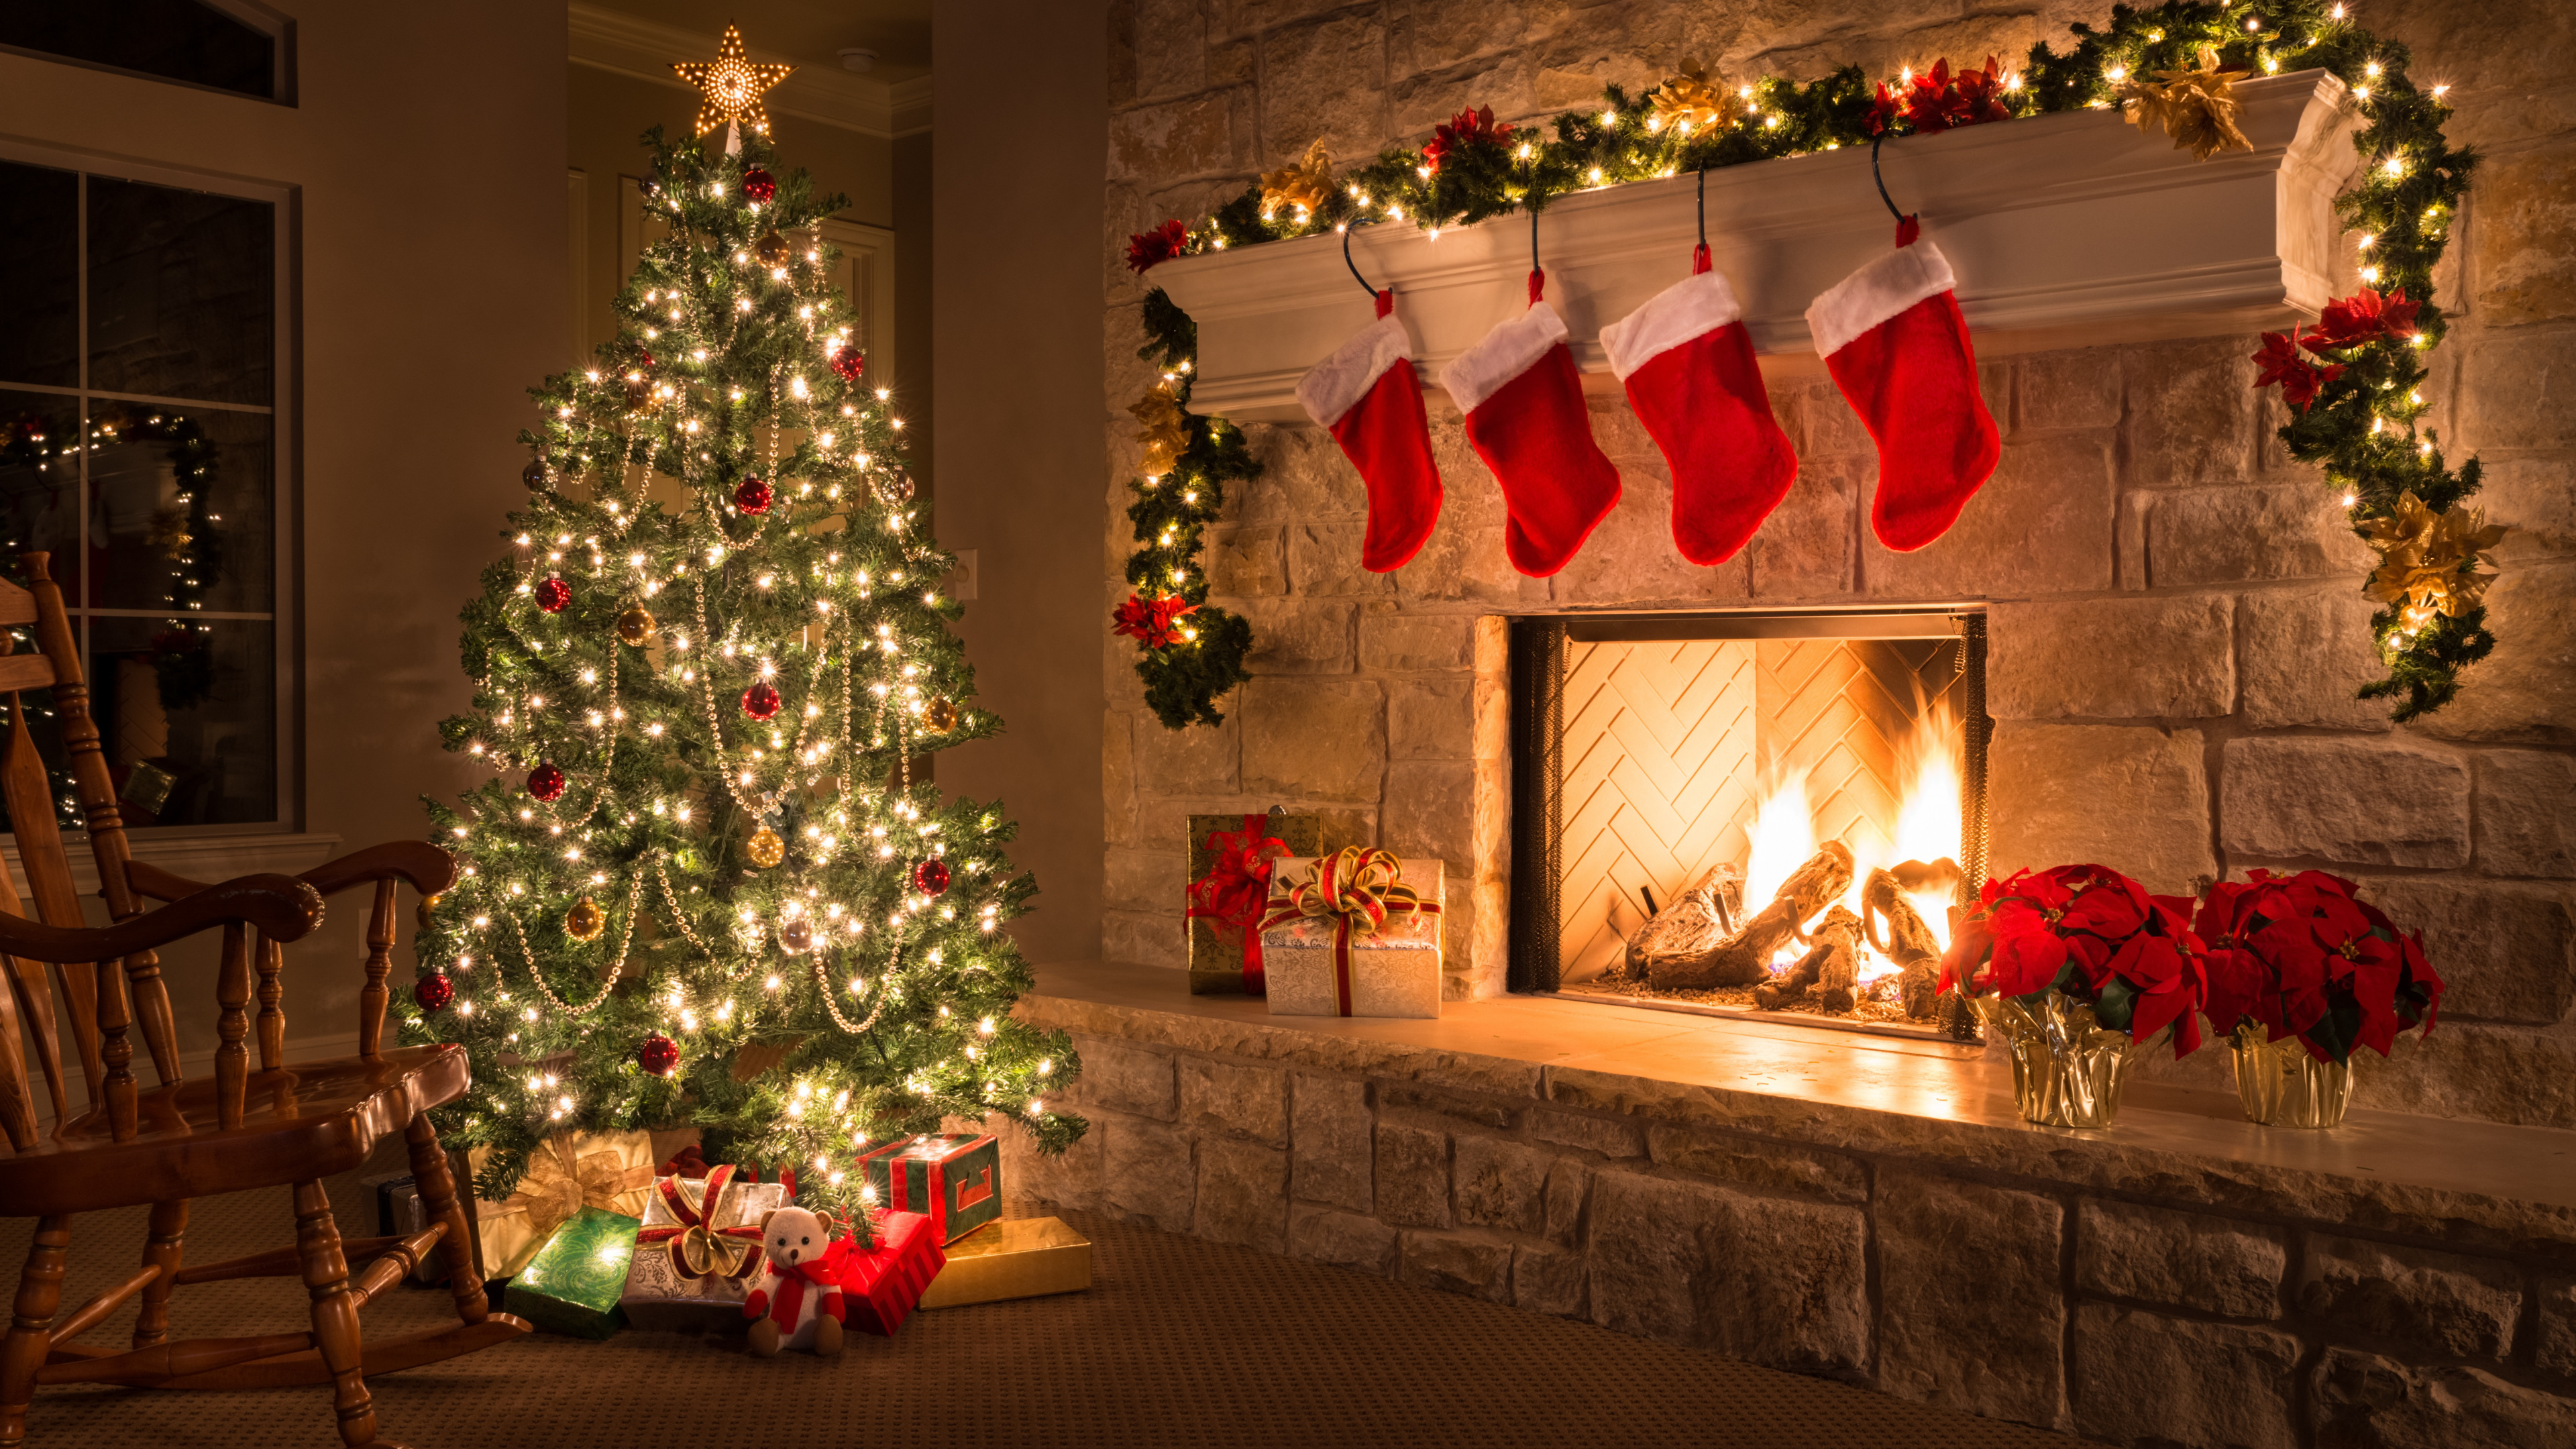 圣诞节那天, 圣诞装饰, 圣诞树, 圣诞节, 圣诞前夕 壁纸 3840x2160 允许